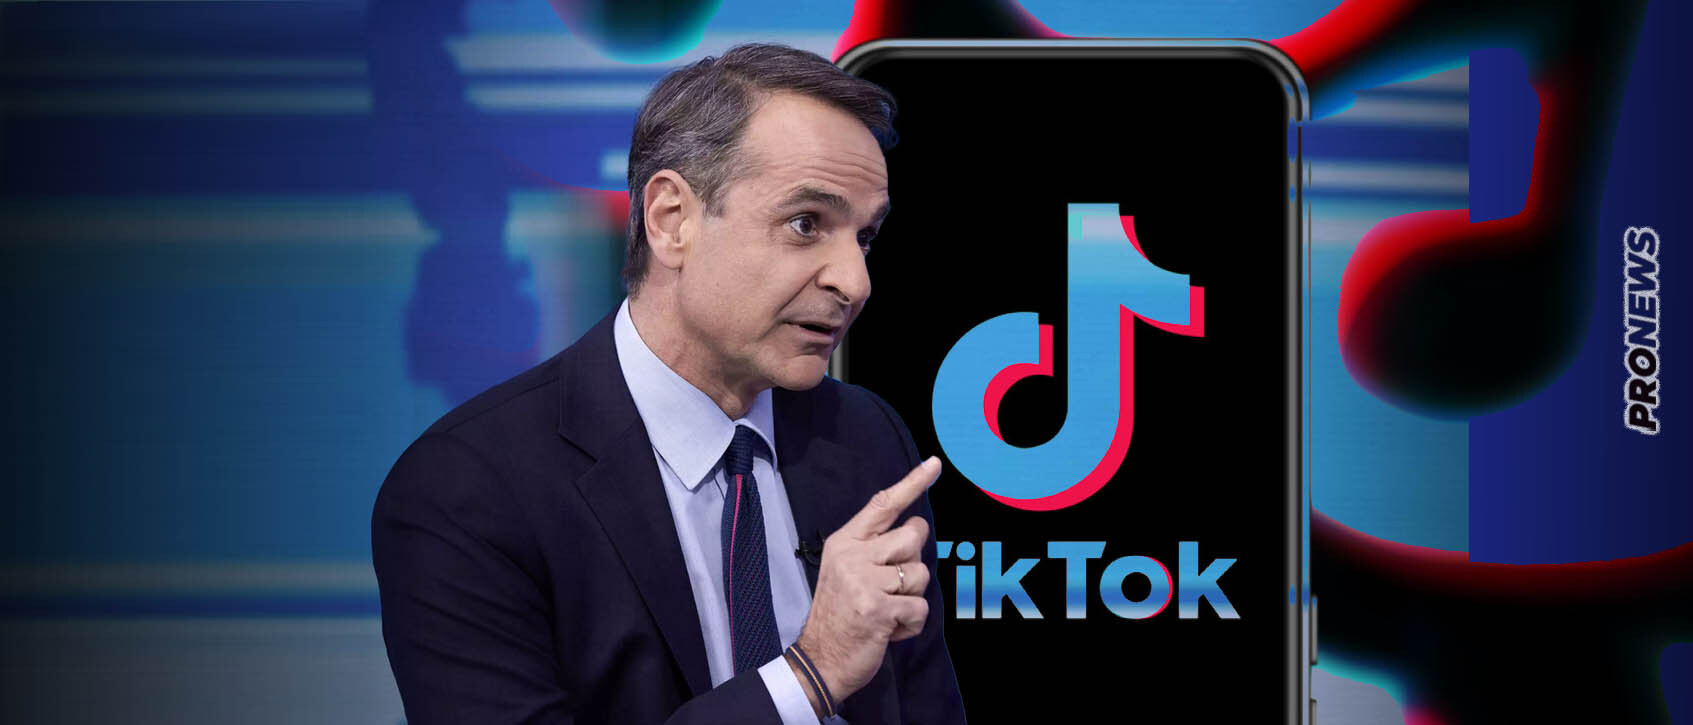 Tik Tok: Τι συμβαίνει και οι ακόλουθοι του πρωθυπουργού Κ.Μητσοτάκη πολλαπλασιάζονται «εν ριπή οφθαλμού»; – Pronews.gr